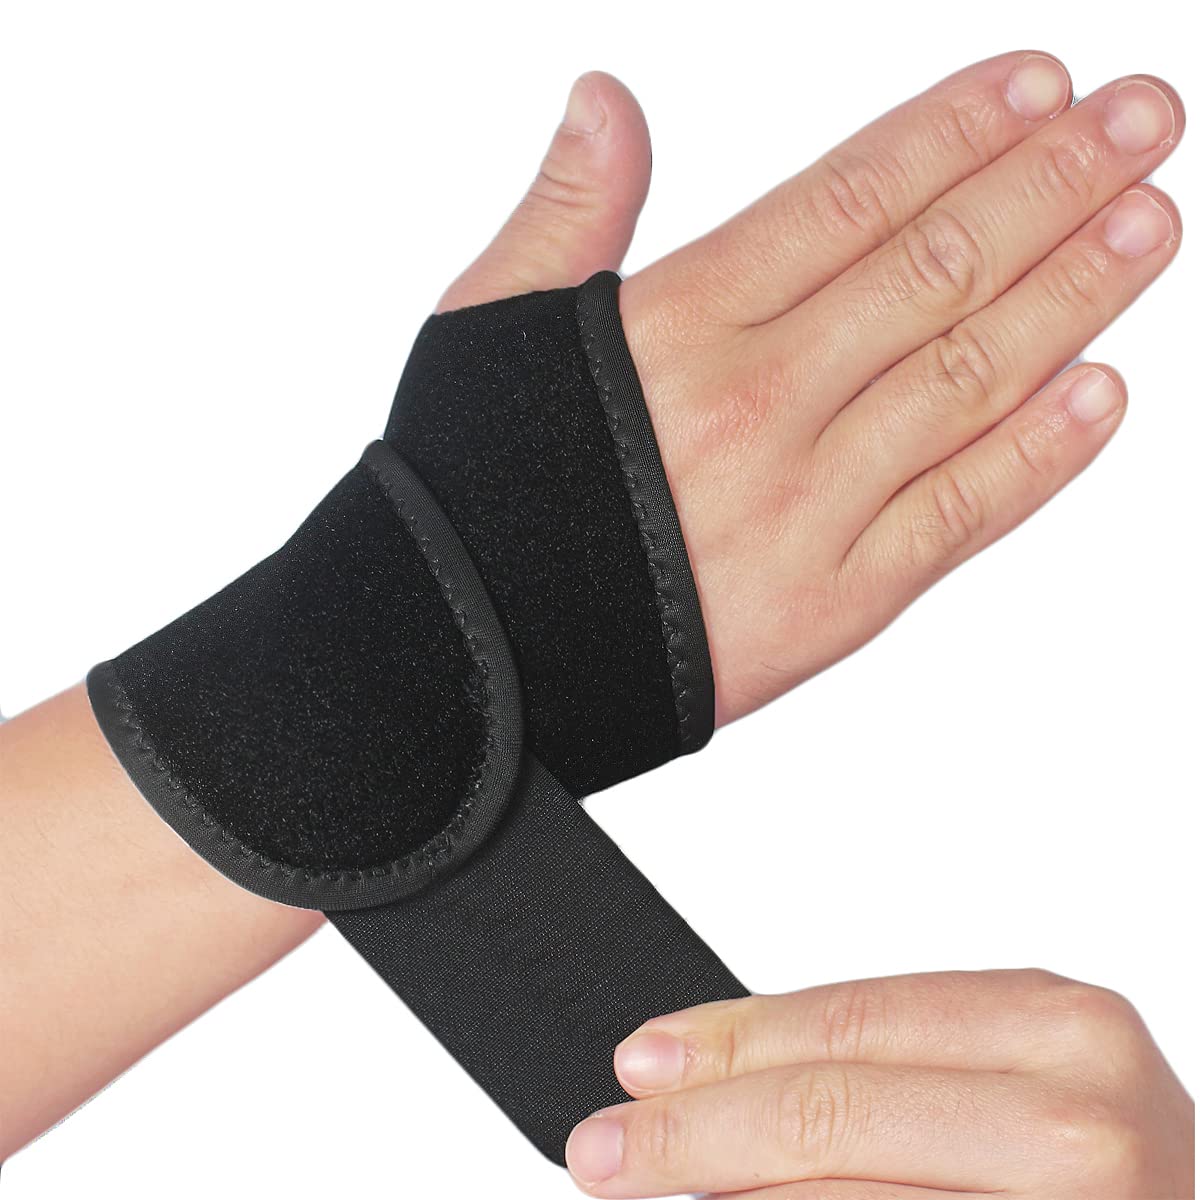 Miracle Splint Pro Wrist Brace